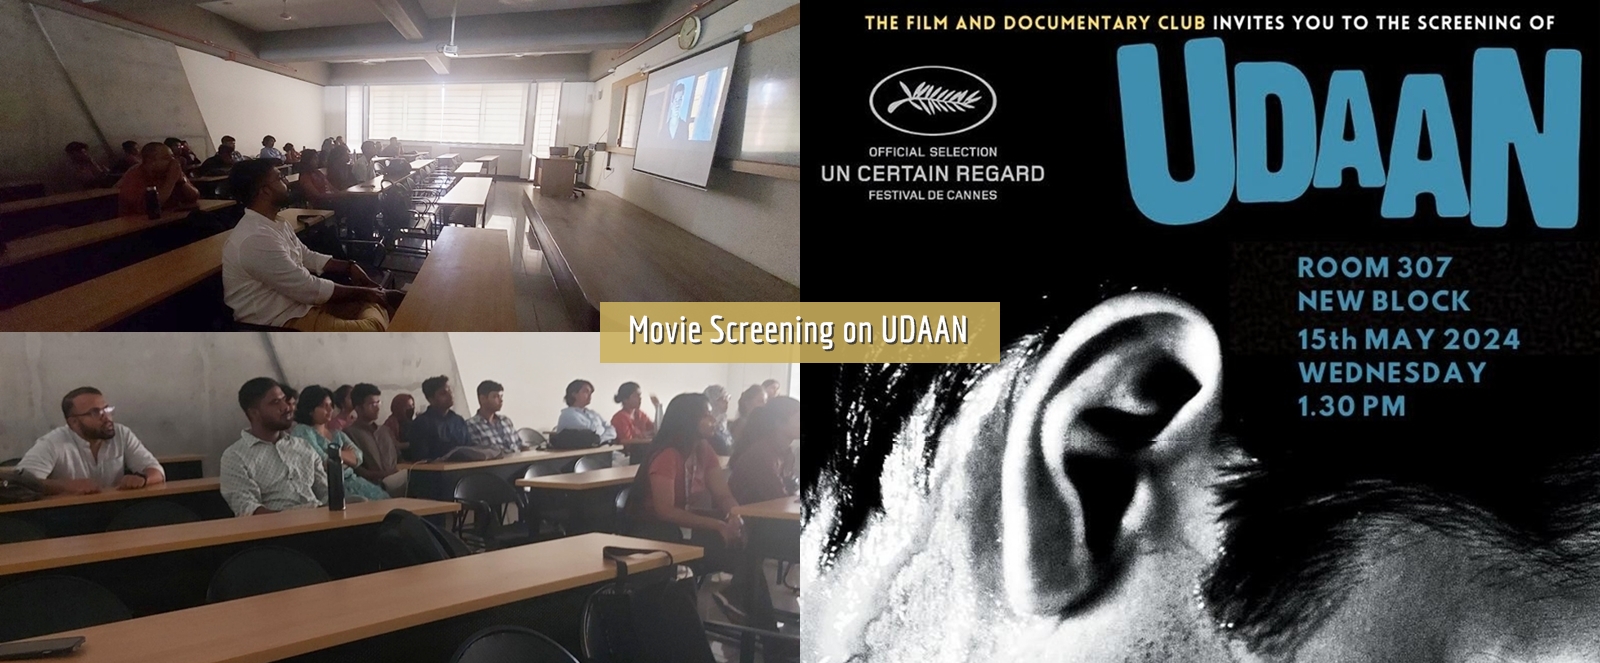 Movie Screening on UDAAN